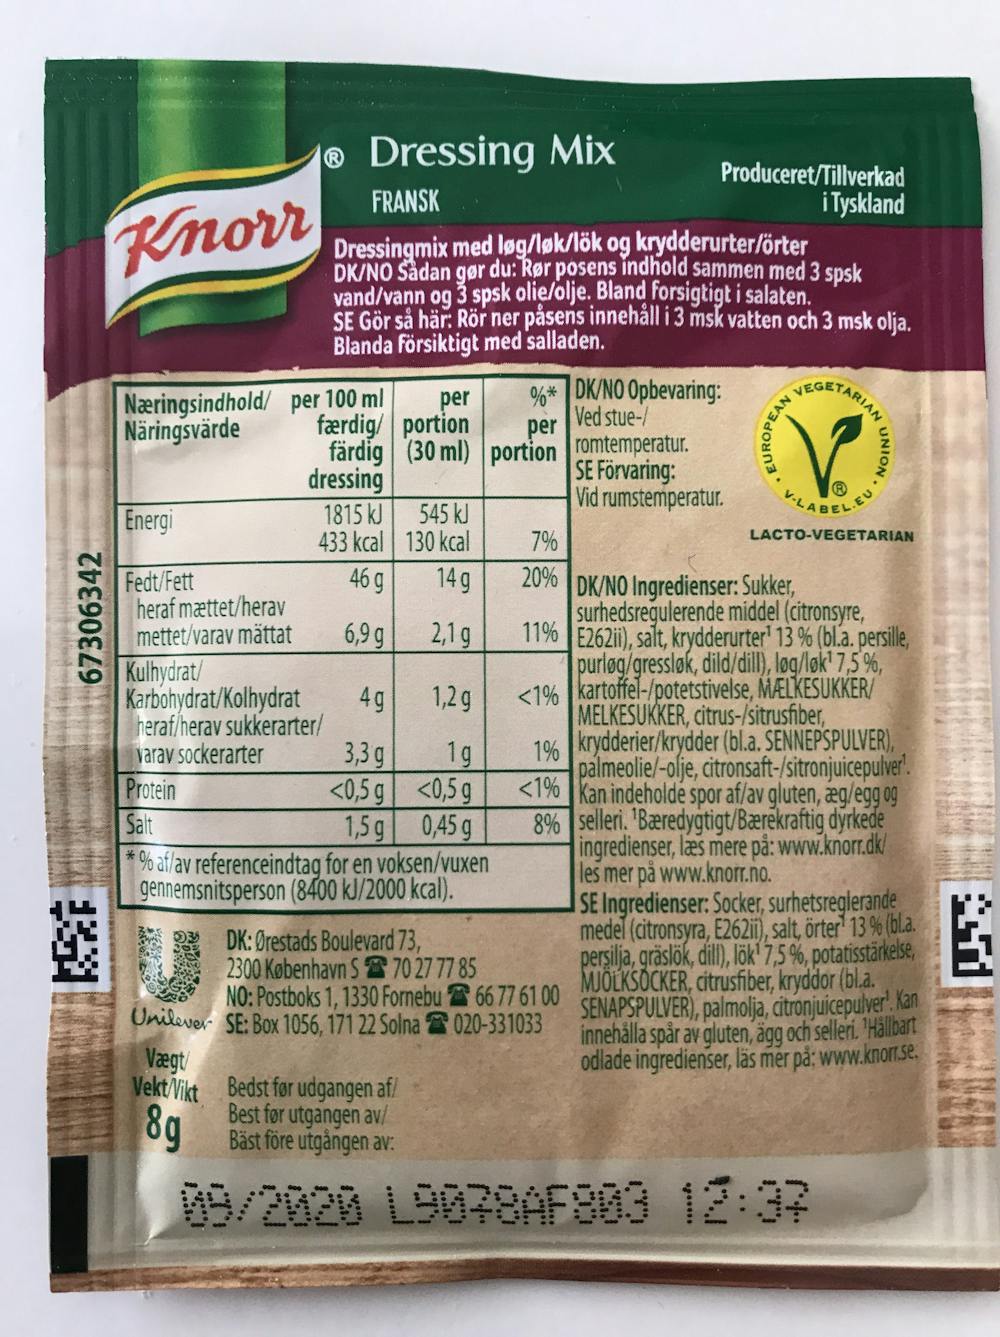 Ingrediensliste - Dressingmix, fransk, Knorr